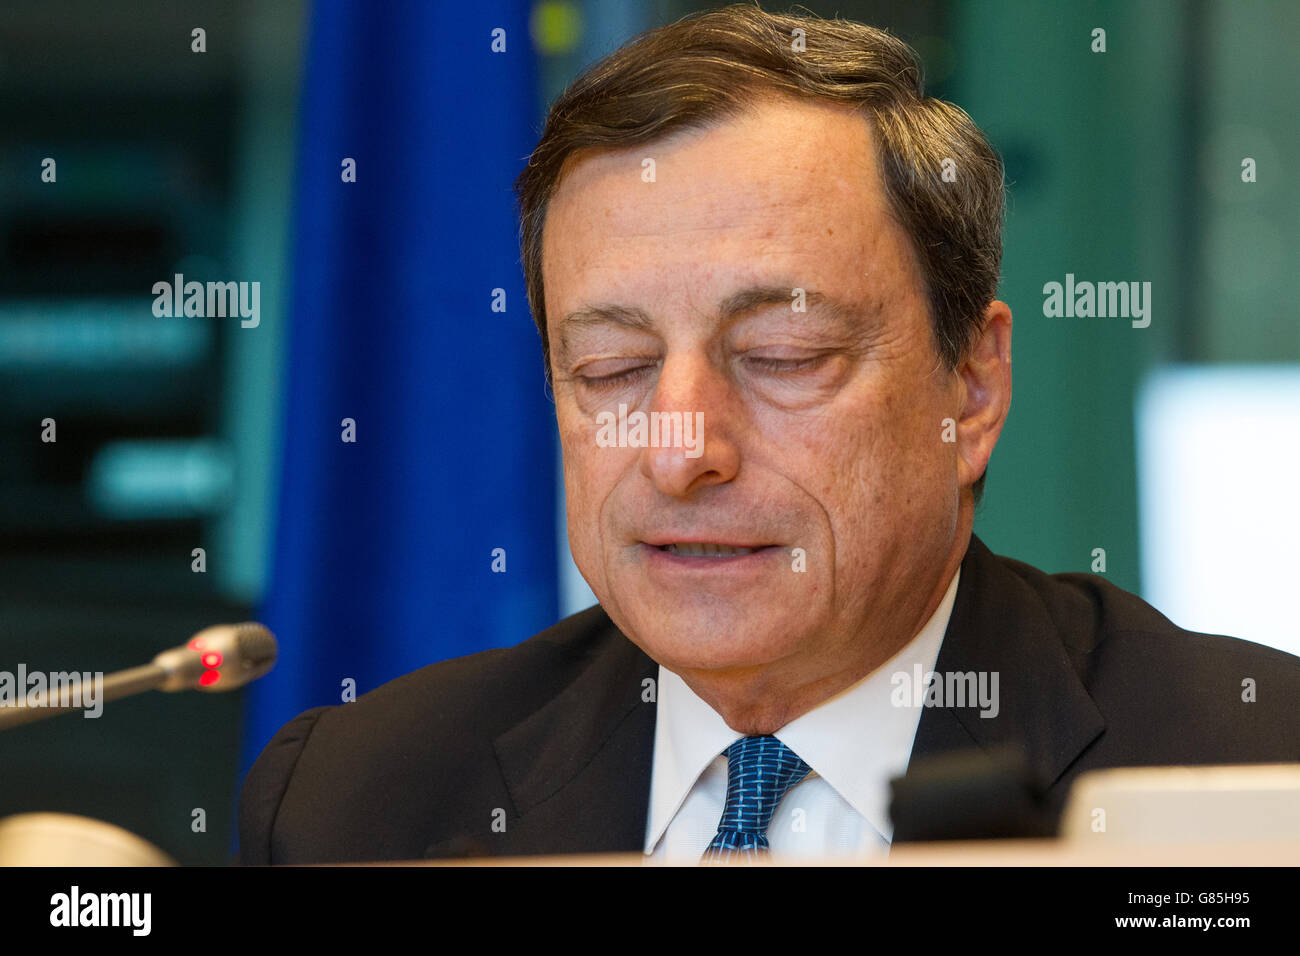 mario draghi ecb president european central bank Stock Photo